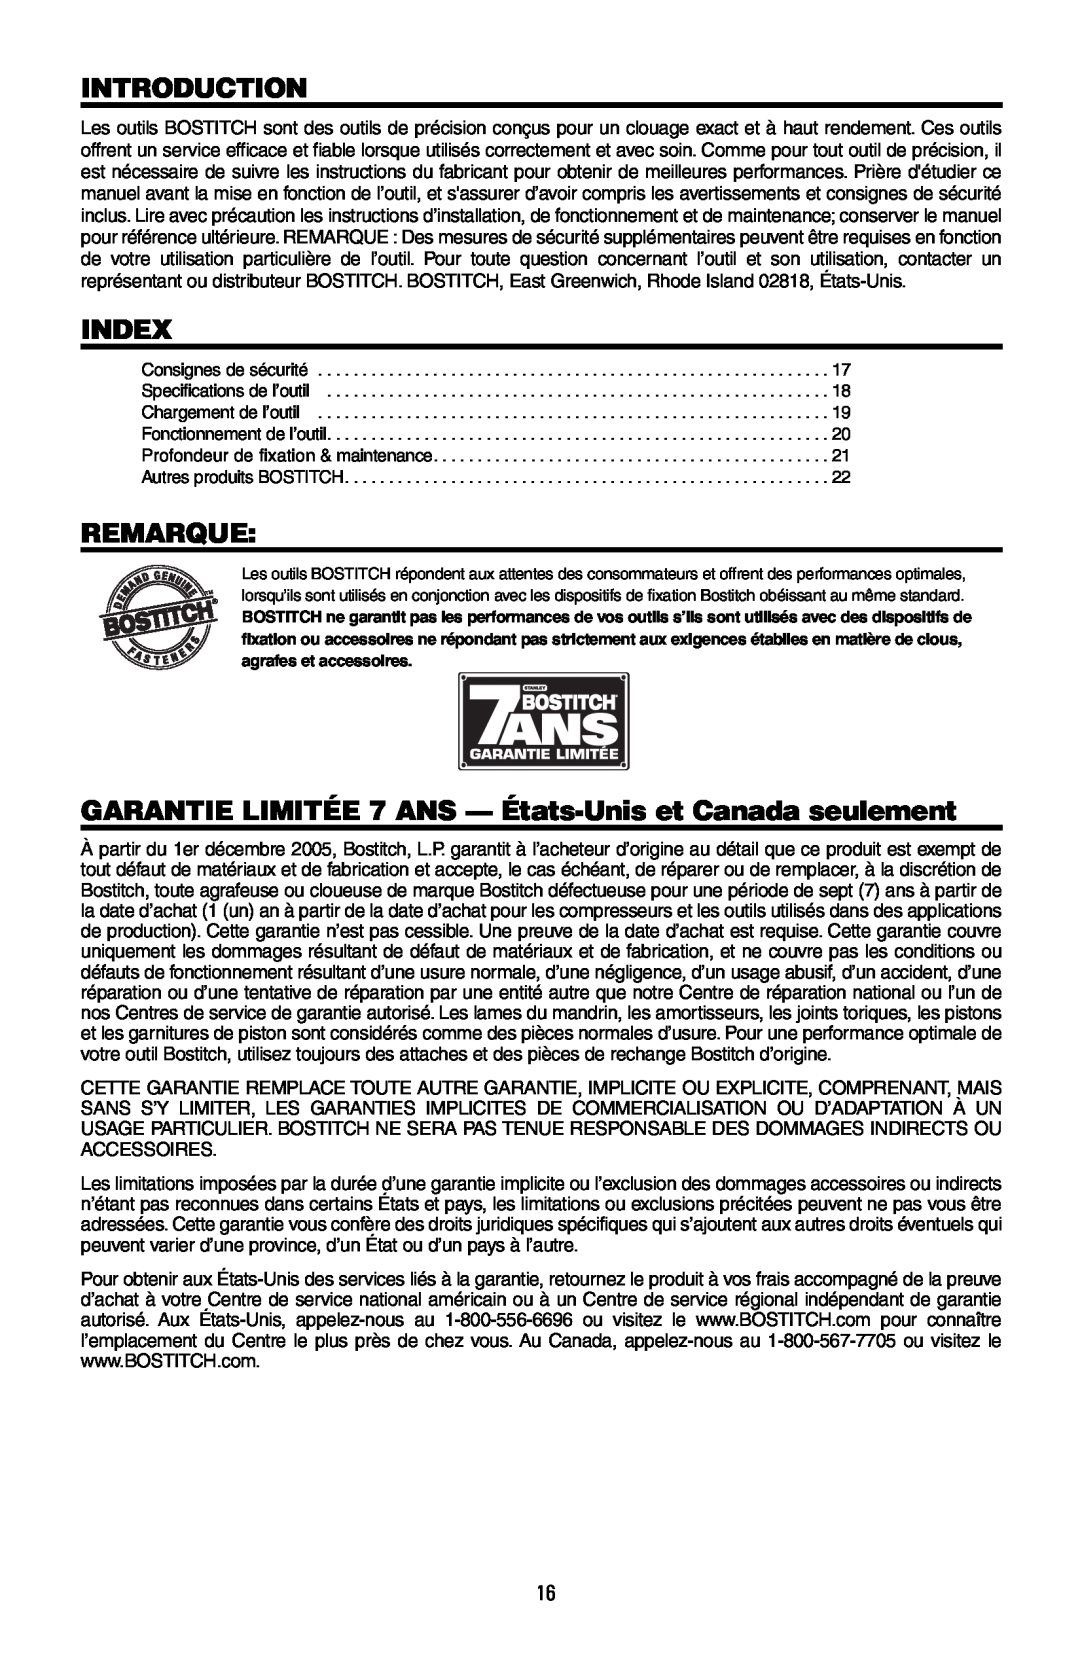 Intec MFN-200 manual Introduction, Index, Remarque, GARANTIE LIMITÉE 7 ANS - États-Unis et Canada seulement 